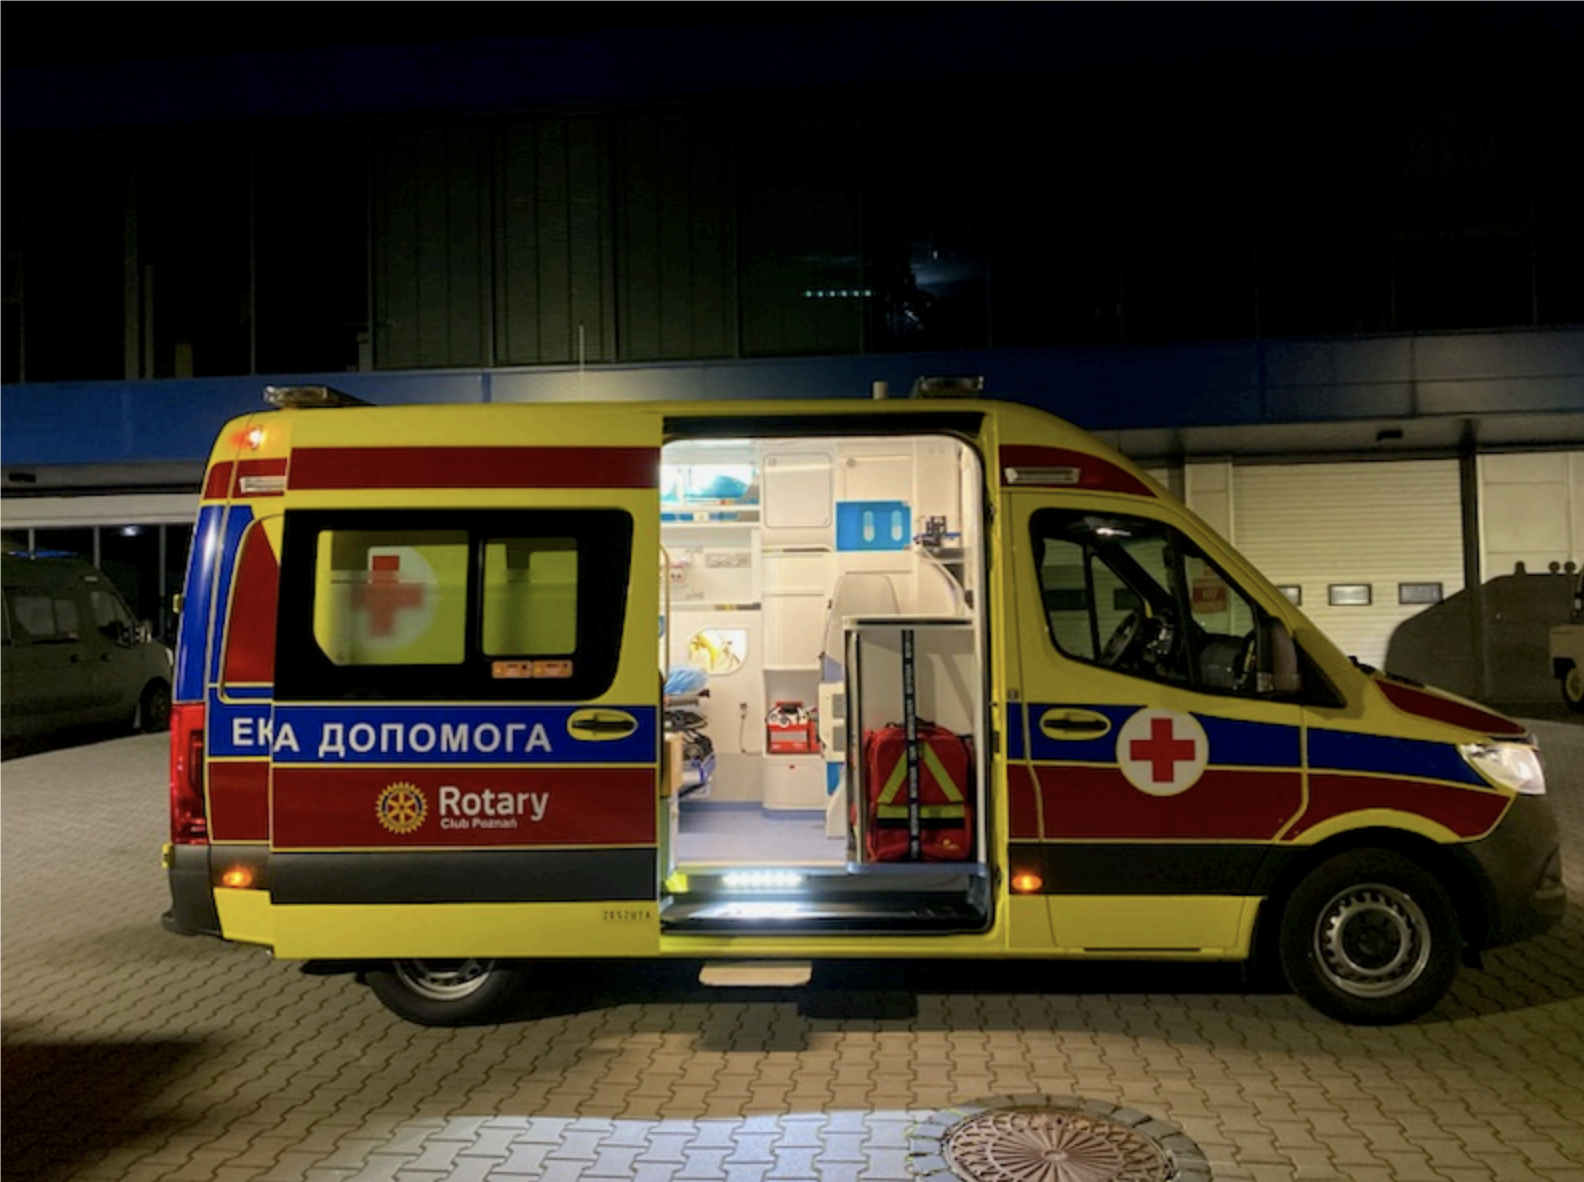 Ambulance in Ukraine